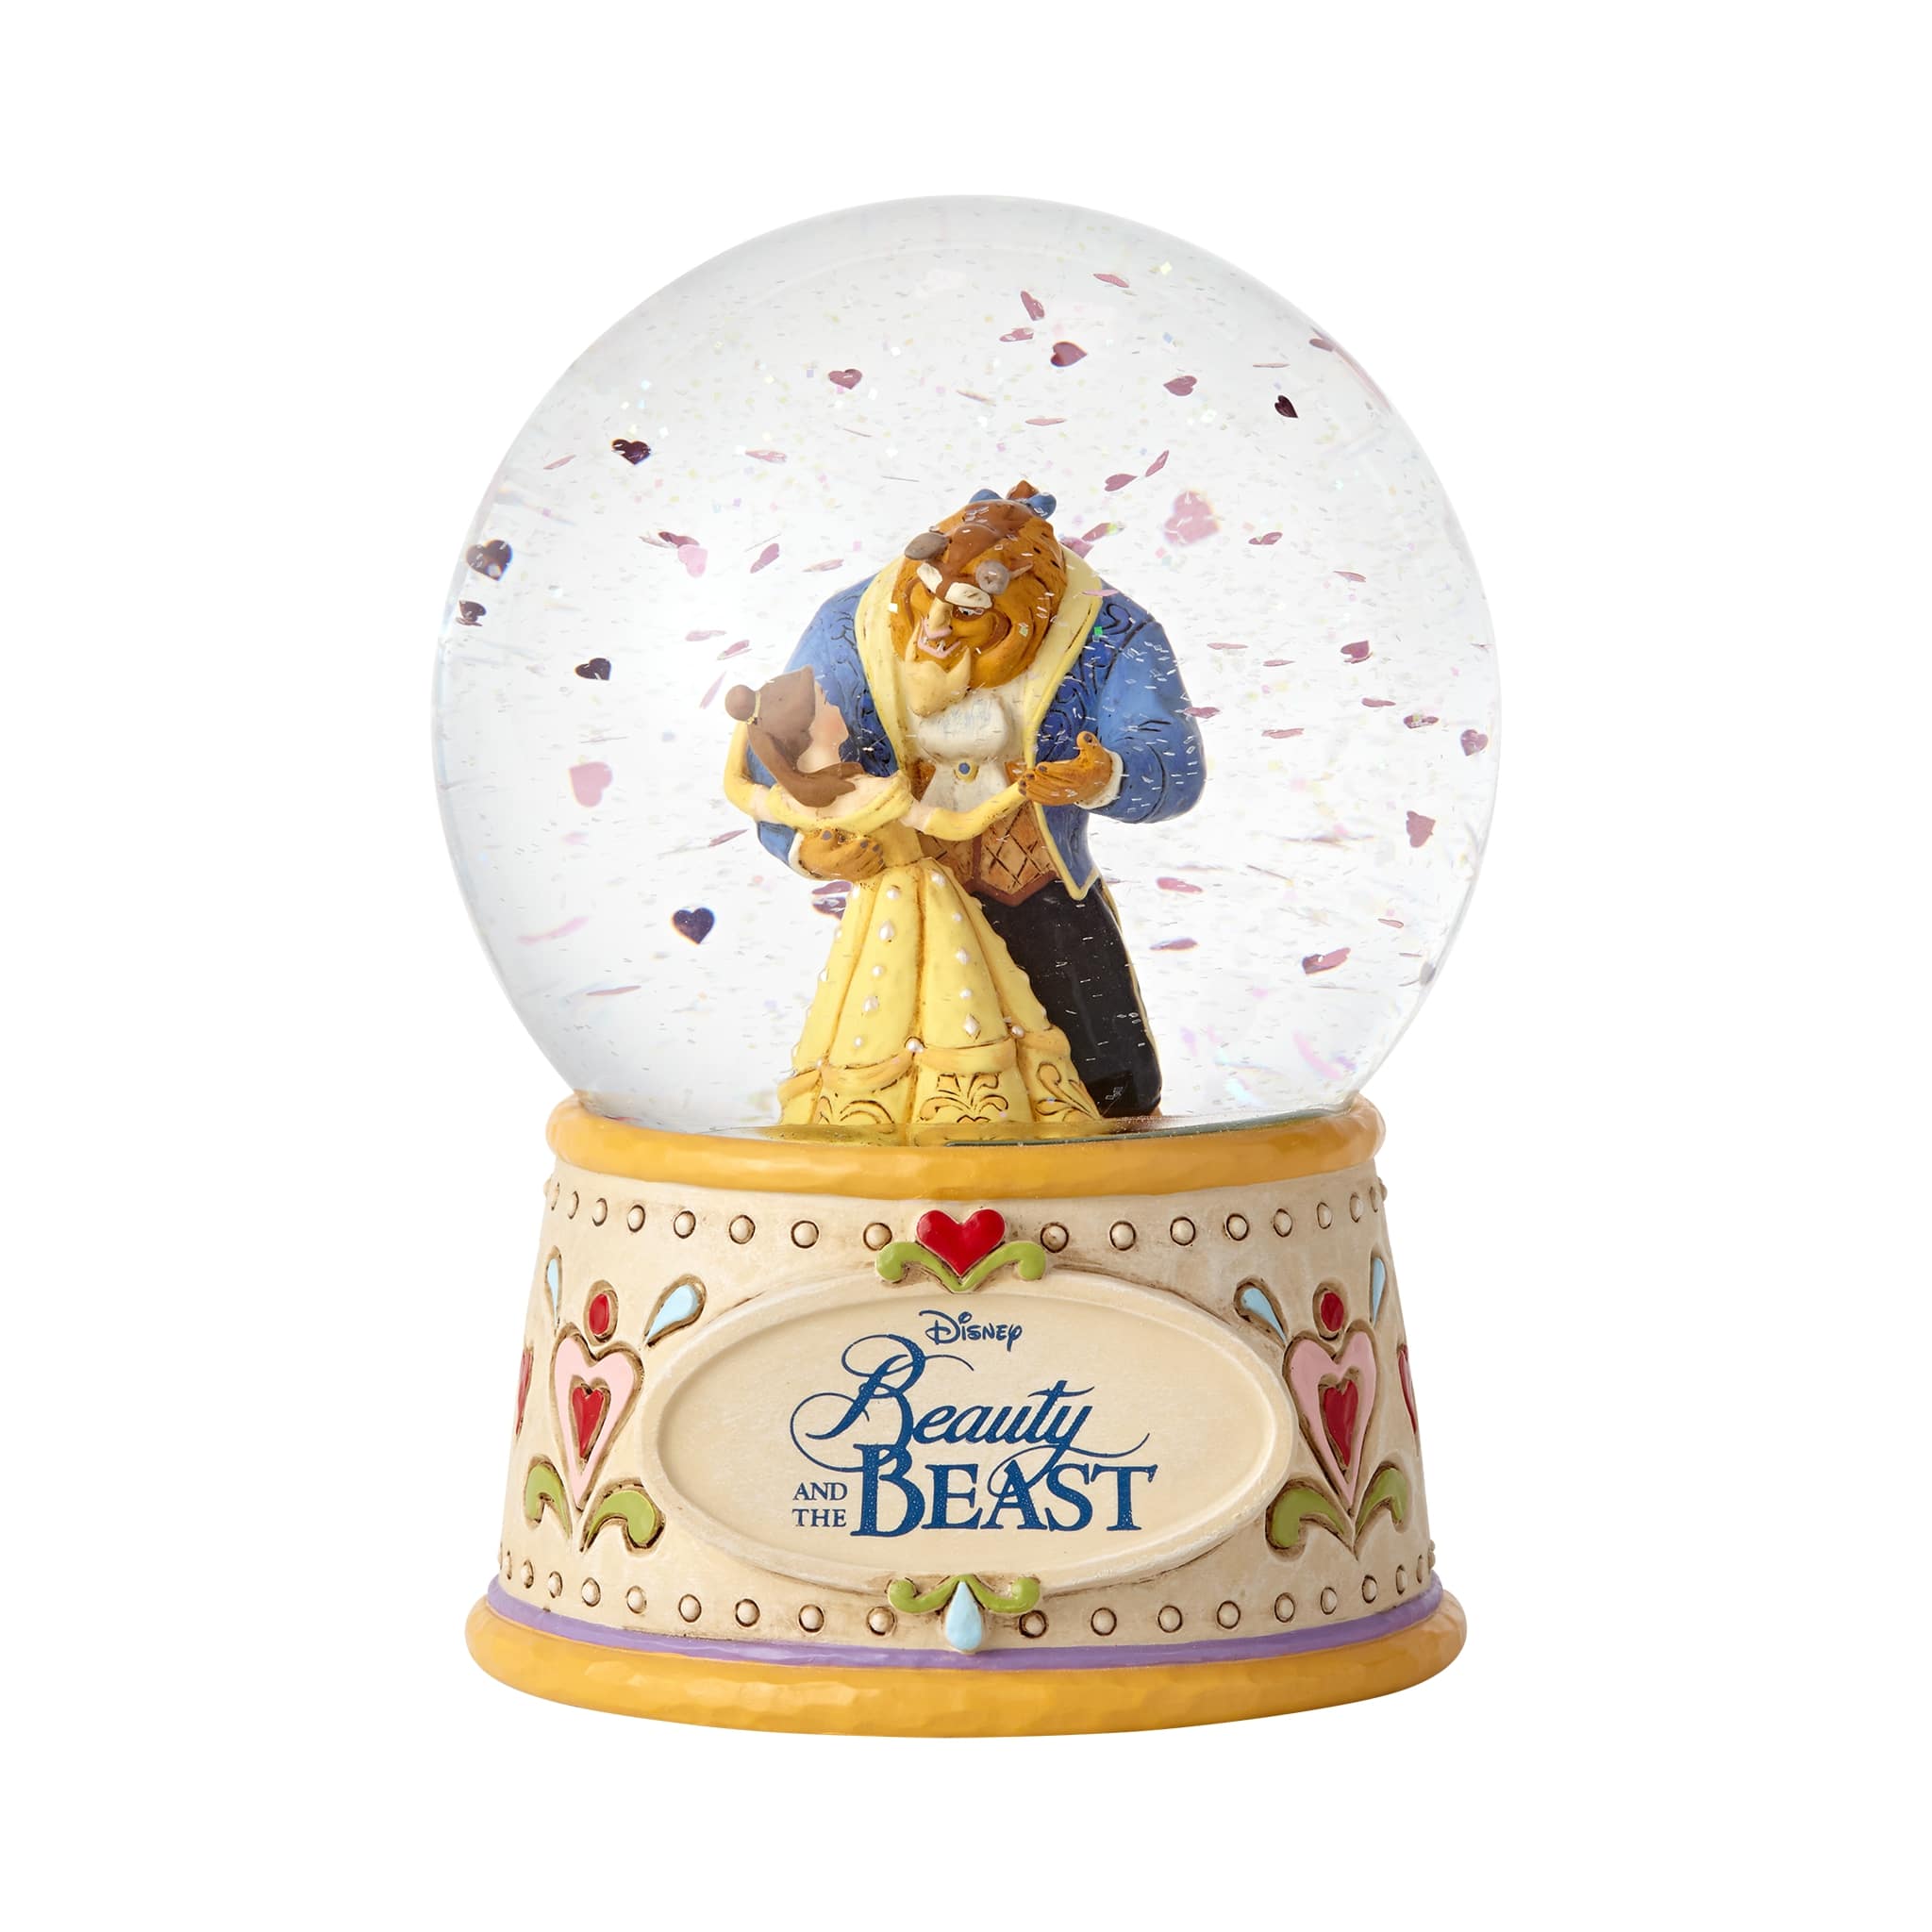 Sammelfigur Disney Die Schöne und das Biest Beauty and the Beast Moonlight Waltz Schneekugel Waterball